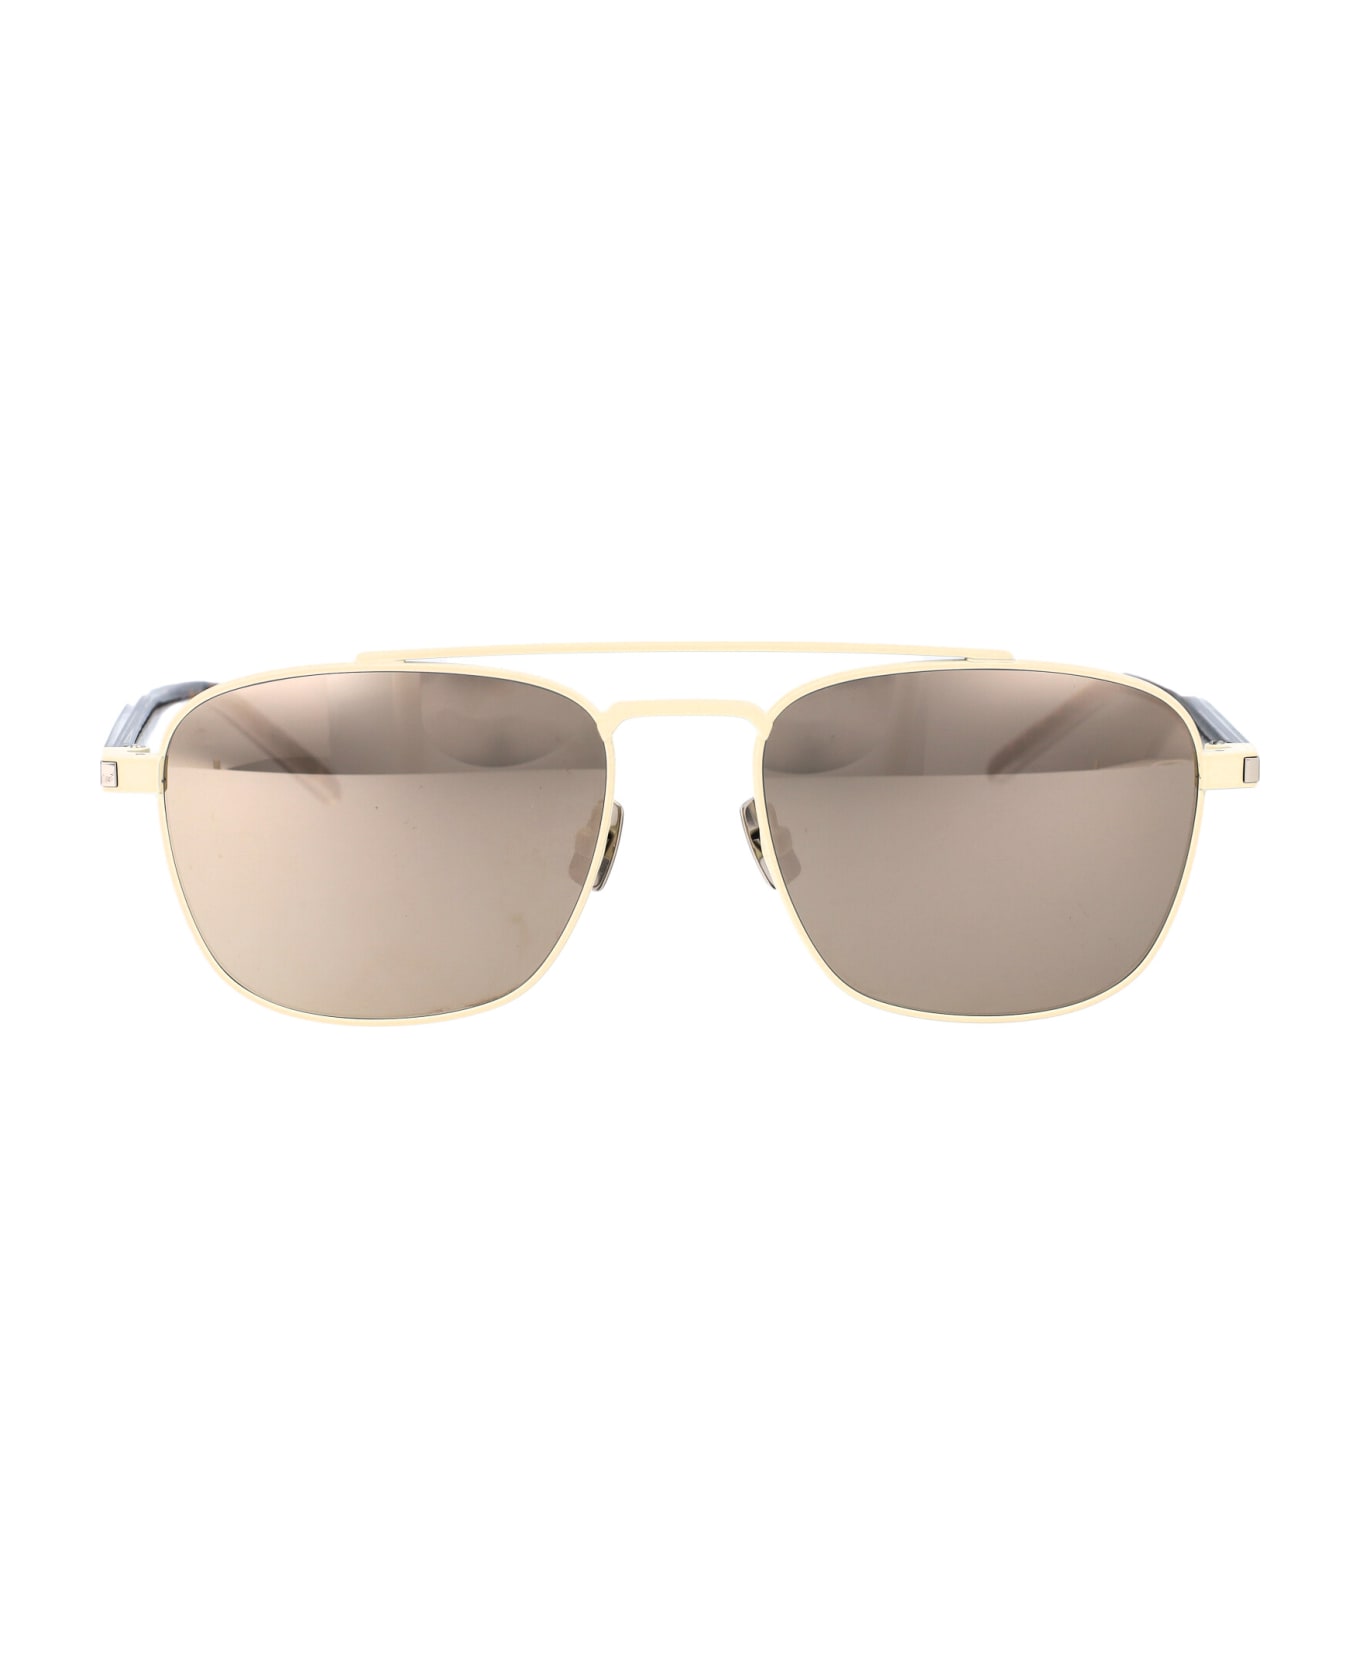 Saint Laurent Eyewear Sl 665 Sunglasses - 005 IVORY CRYSTAL WHITE サングラス